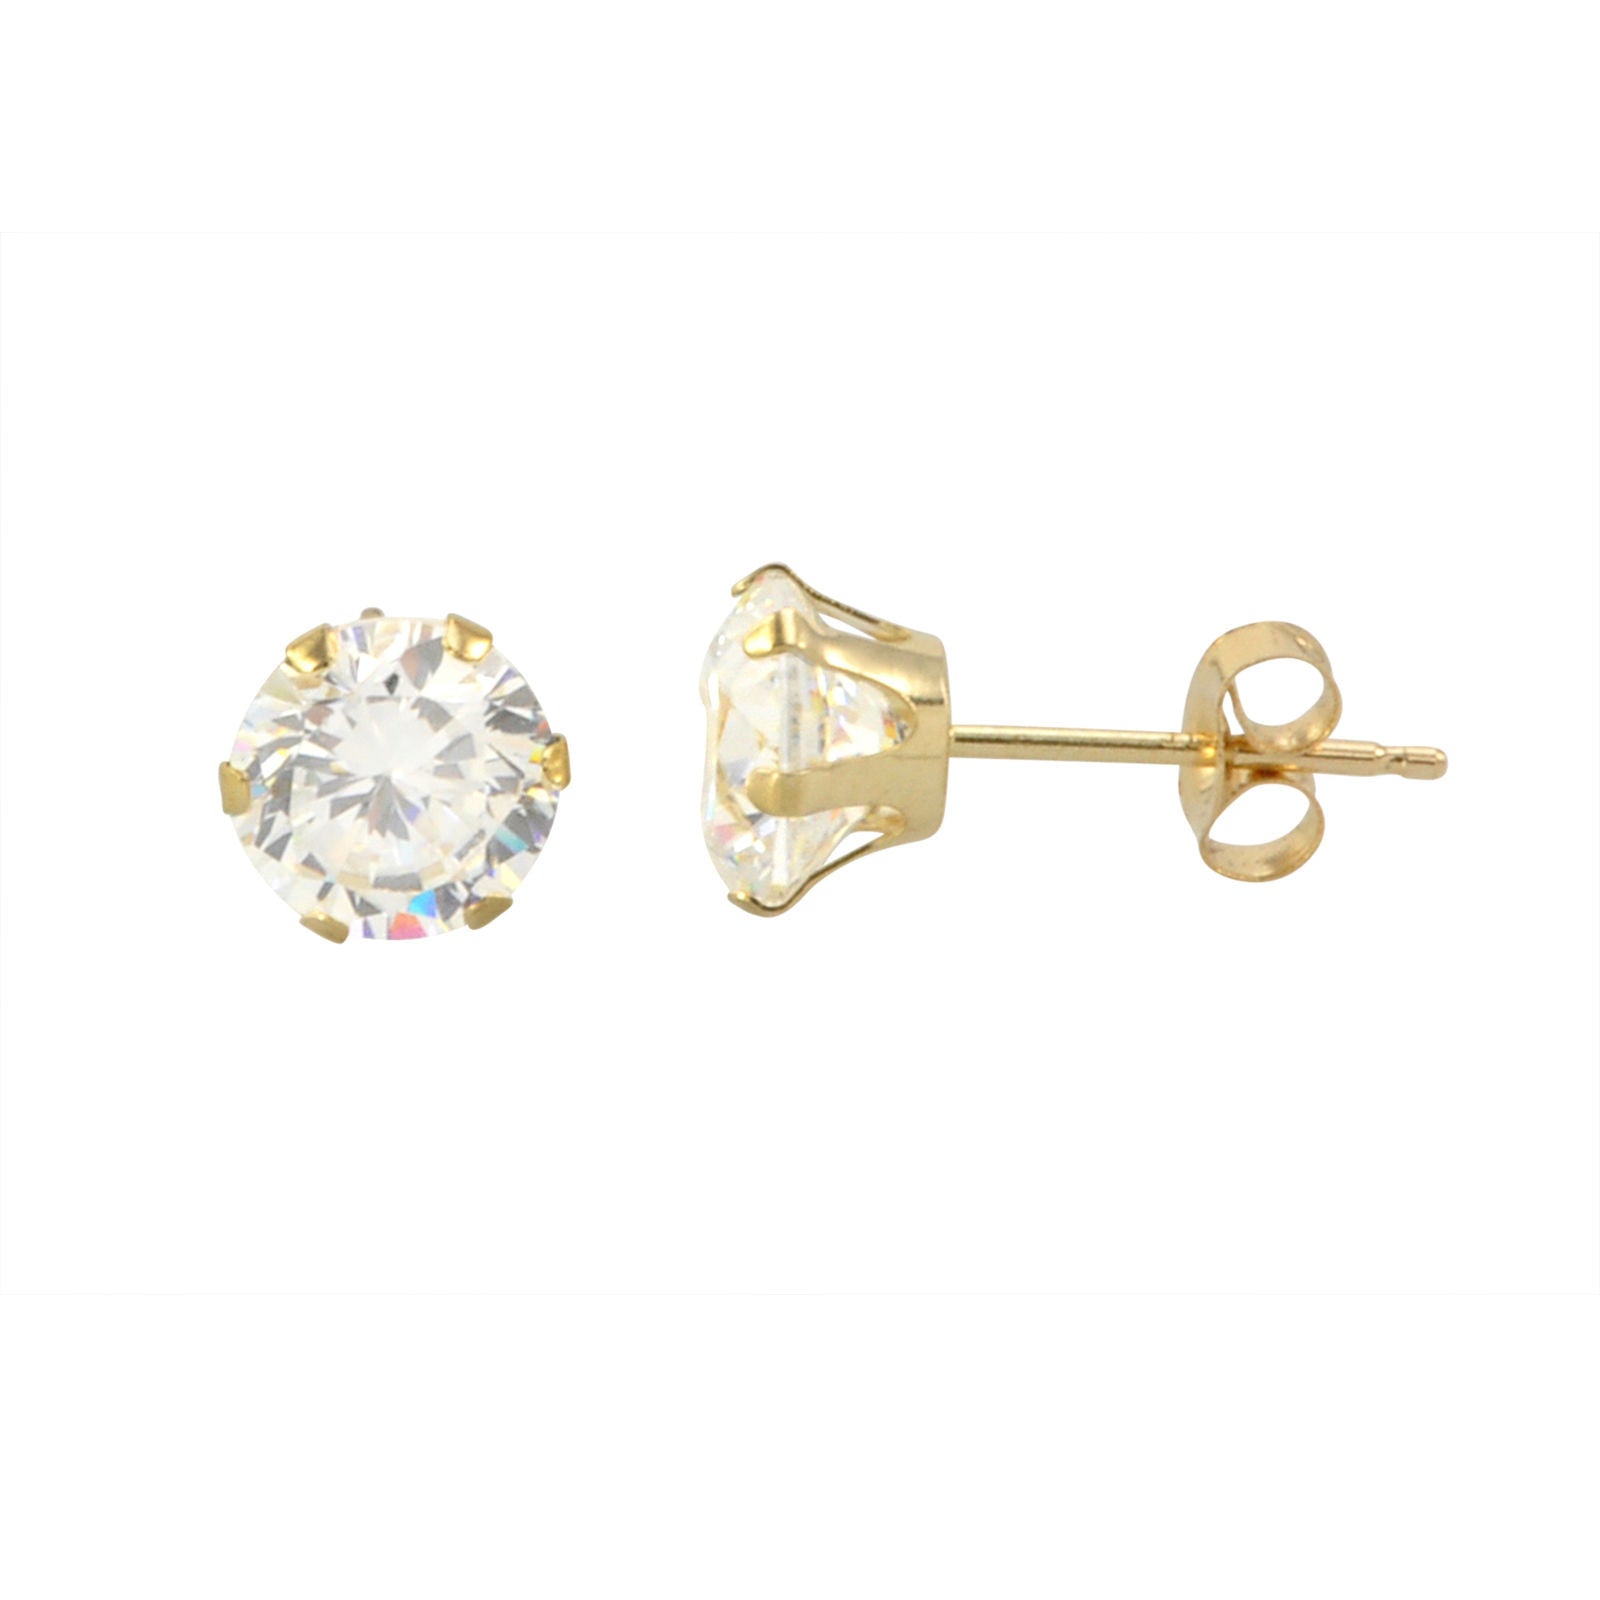 14K Yellow Gold Pink CZ Open Flower Screw Back Earrings For Girls –